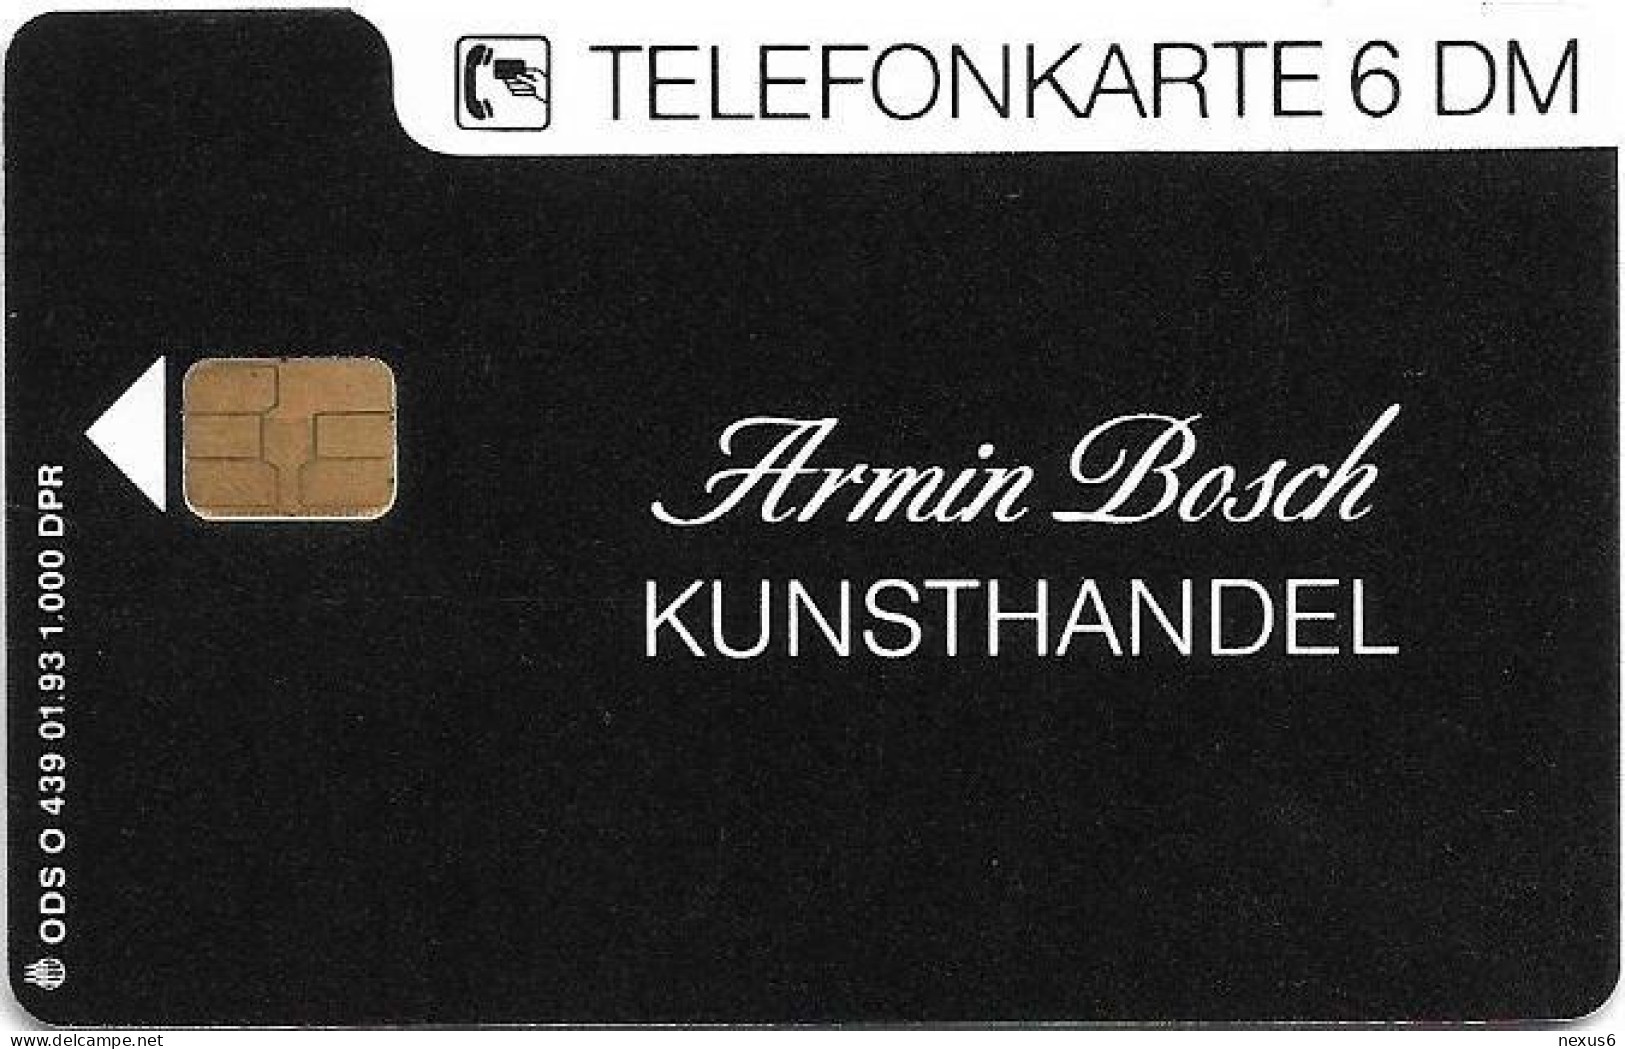 Germany - Kunsthandel Armin Bosch - O 0439 - 01.1993, 6DM, 1.000ex, Mint - O-Series : Series Clientes Excluidos Servicio De Colección